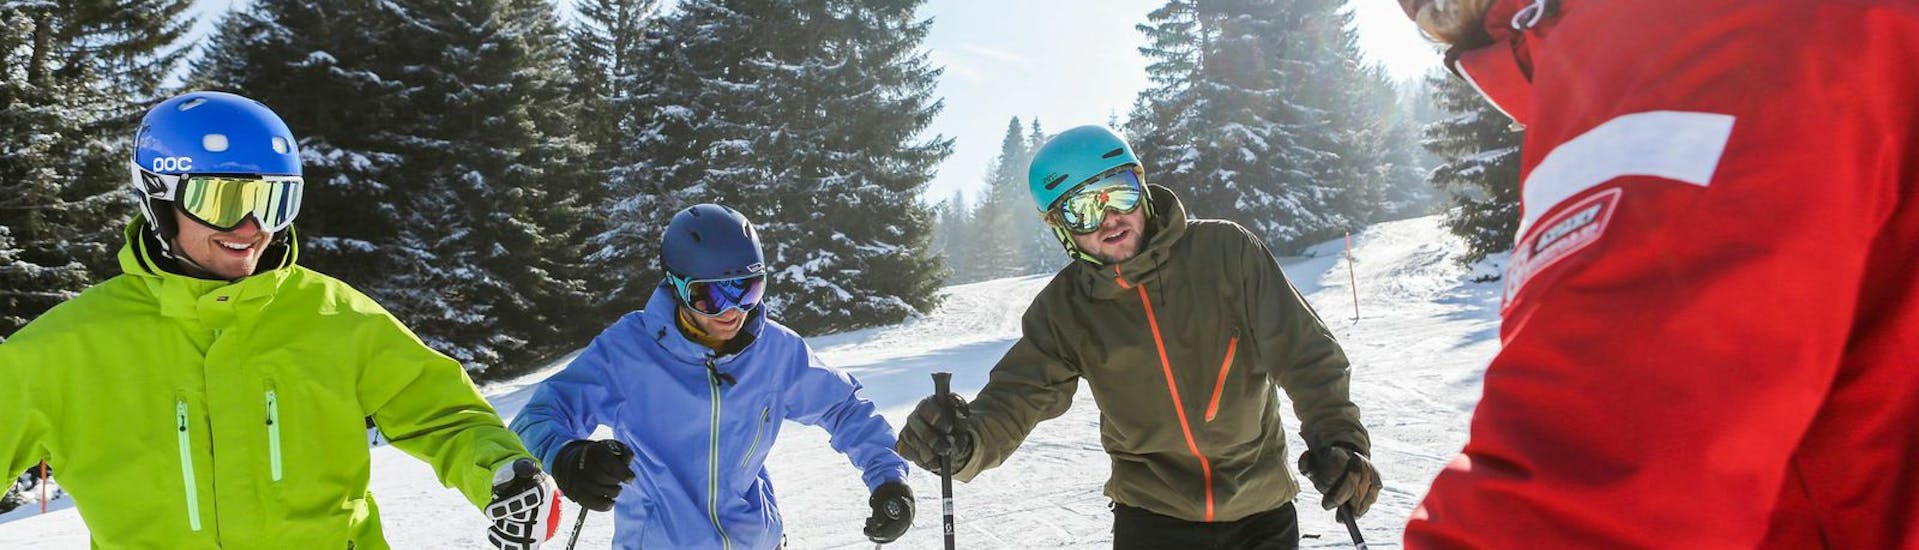 Moniteur de ski faisant face aux élèves pendant les cours de ski adultes pour skieurs expérimentés avec Skischool Nova.